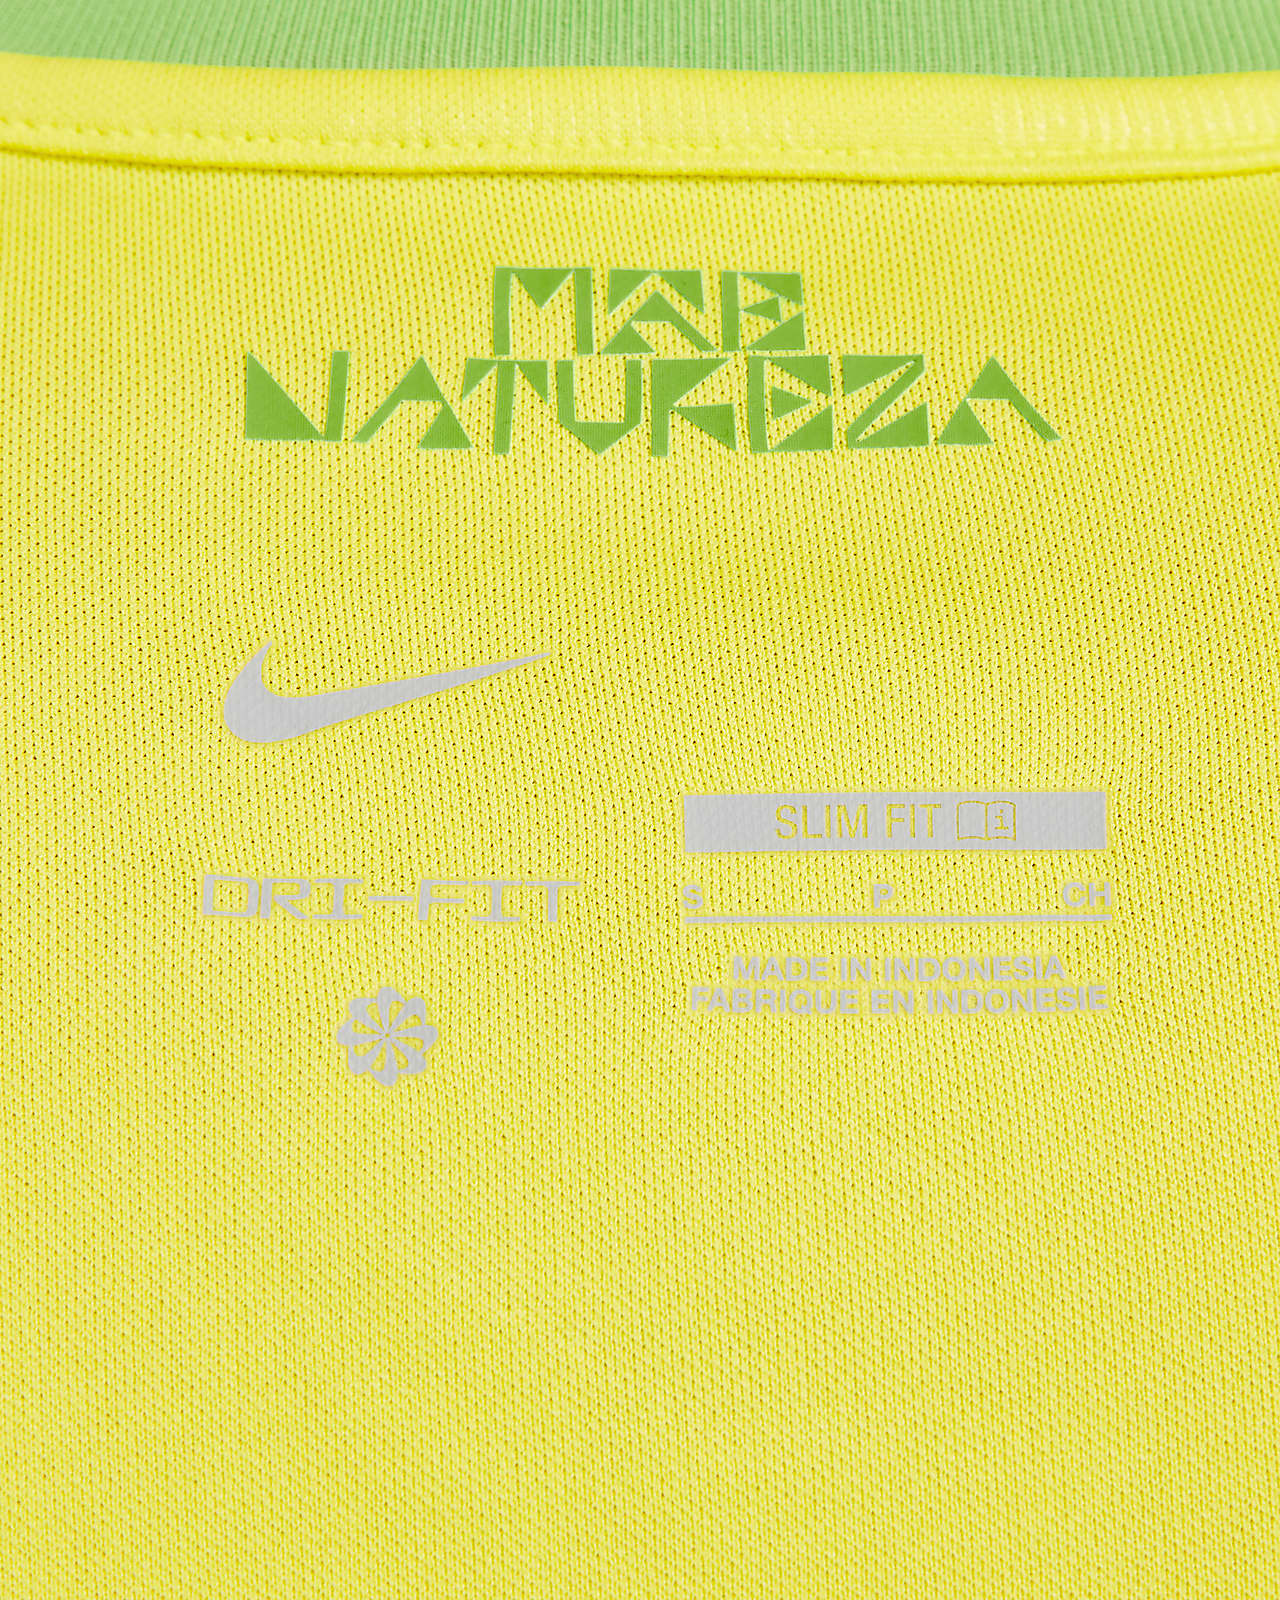 Nike Women's Flex Team Brazil Jacket